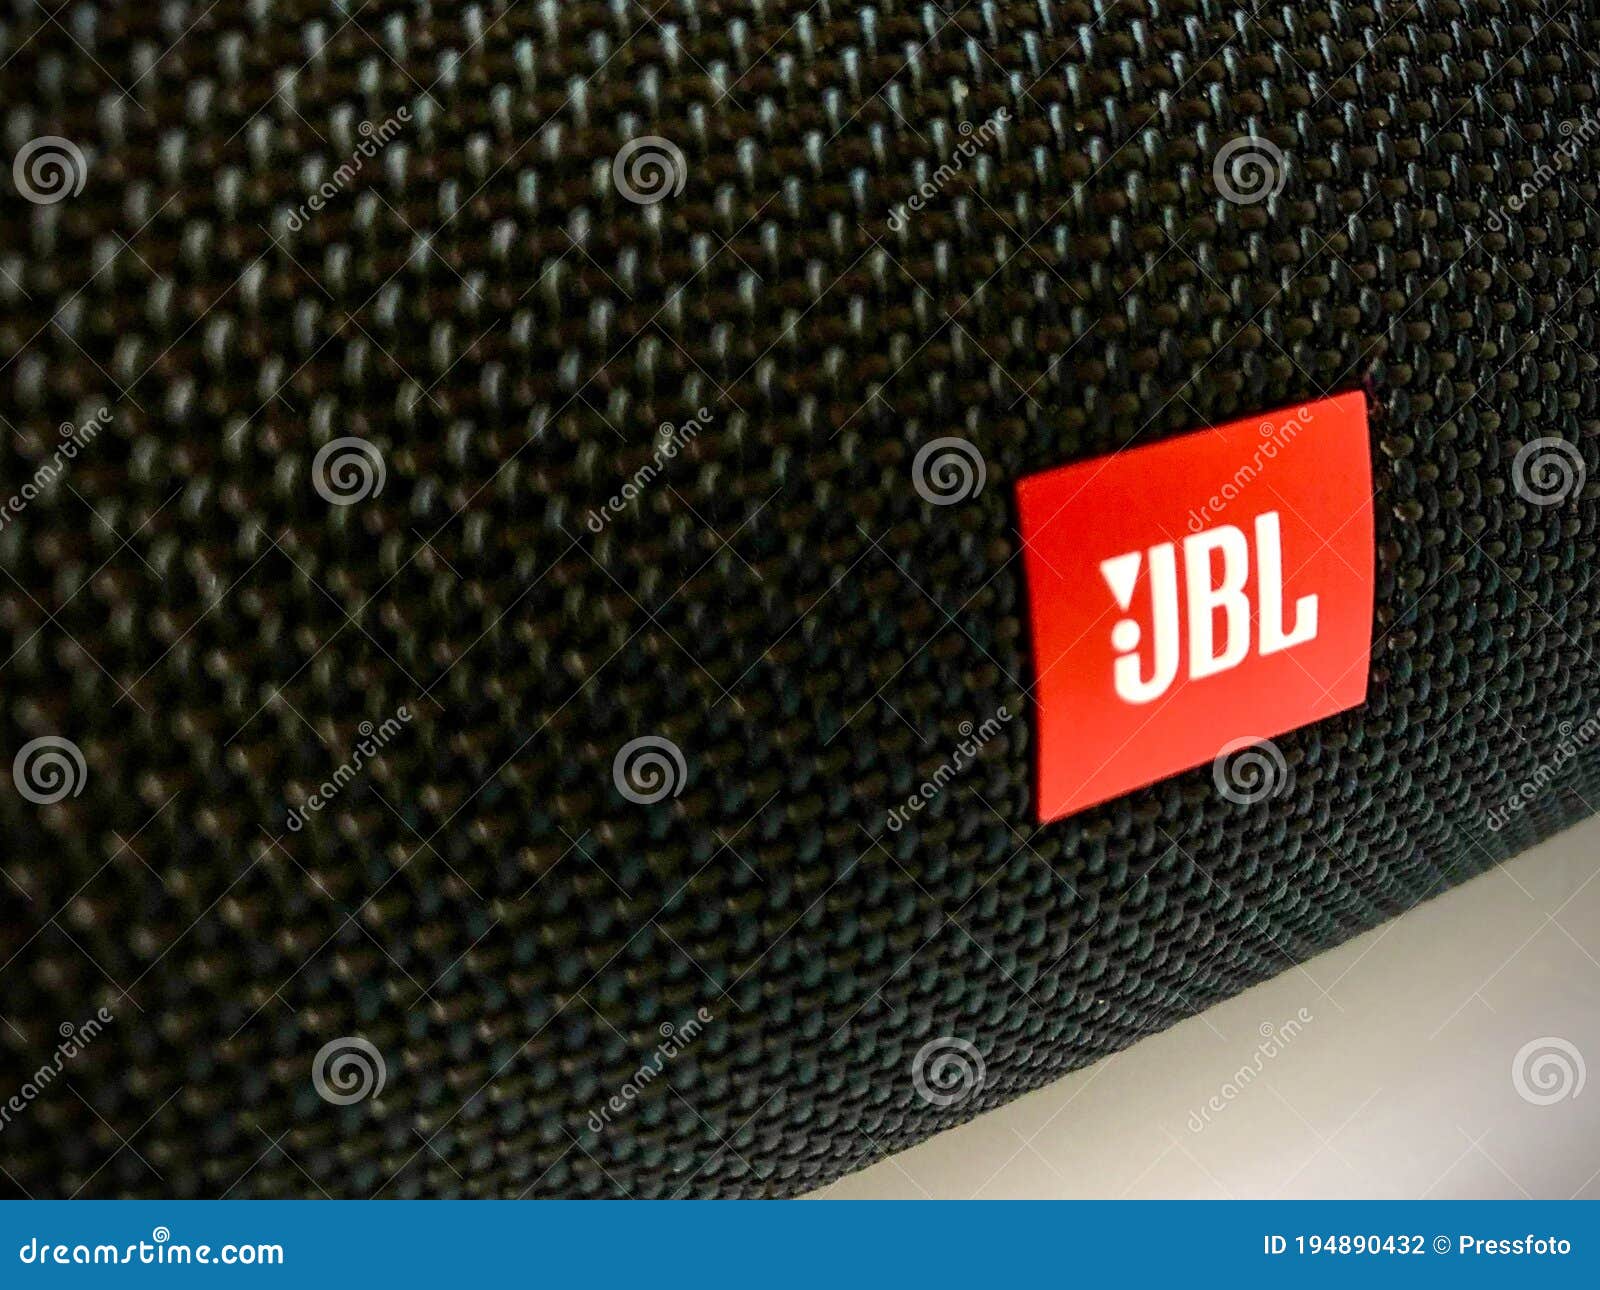 JBL India on X: 